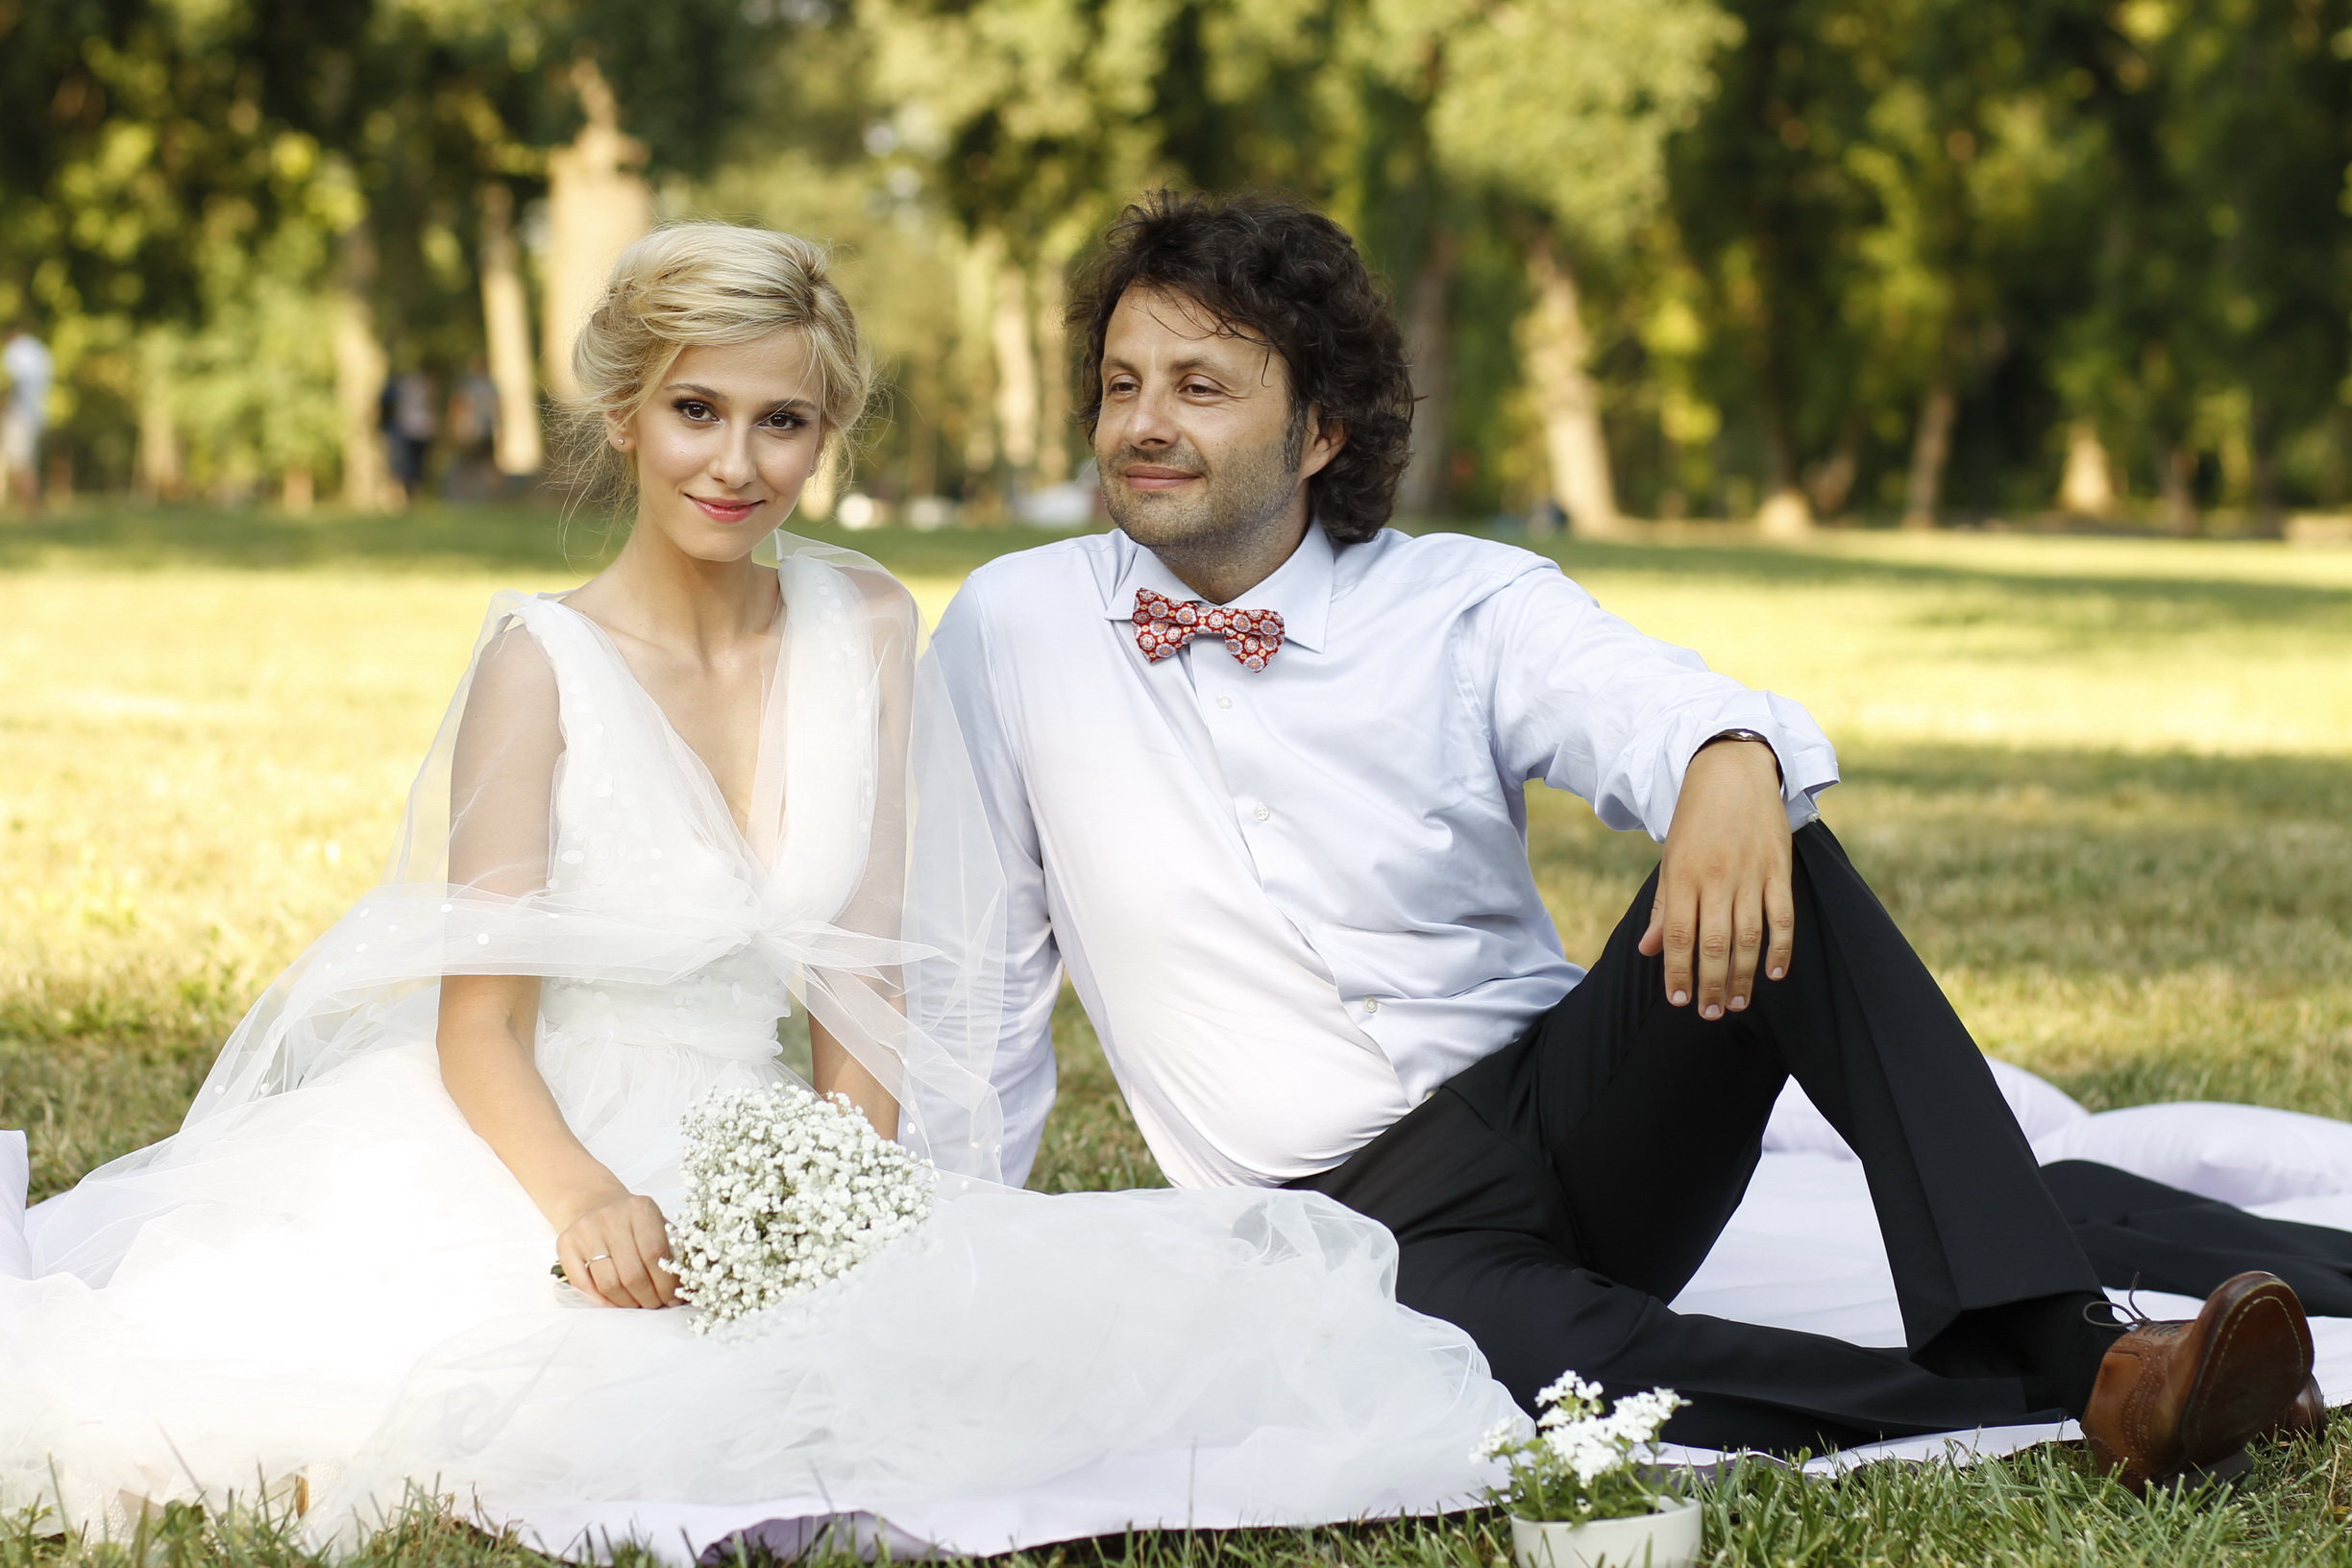 Cel mai emotionant moment de la nunta Danei Rogoz cu Radu Dragomir. FOTO - Imaginea 3